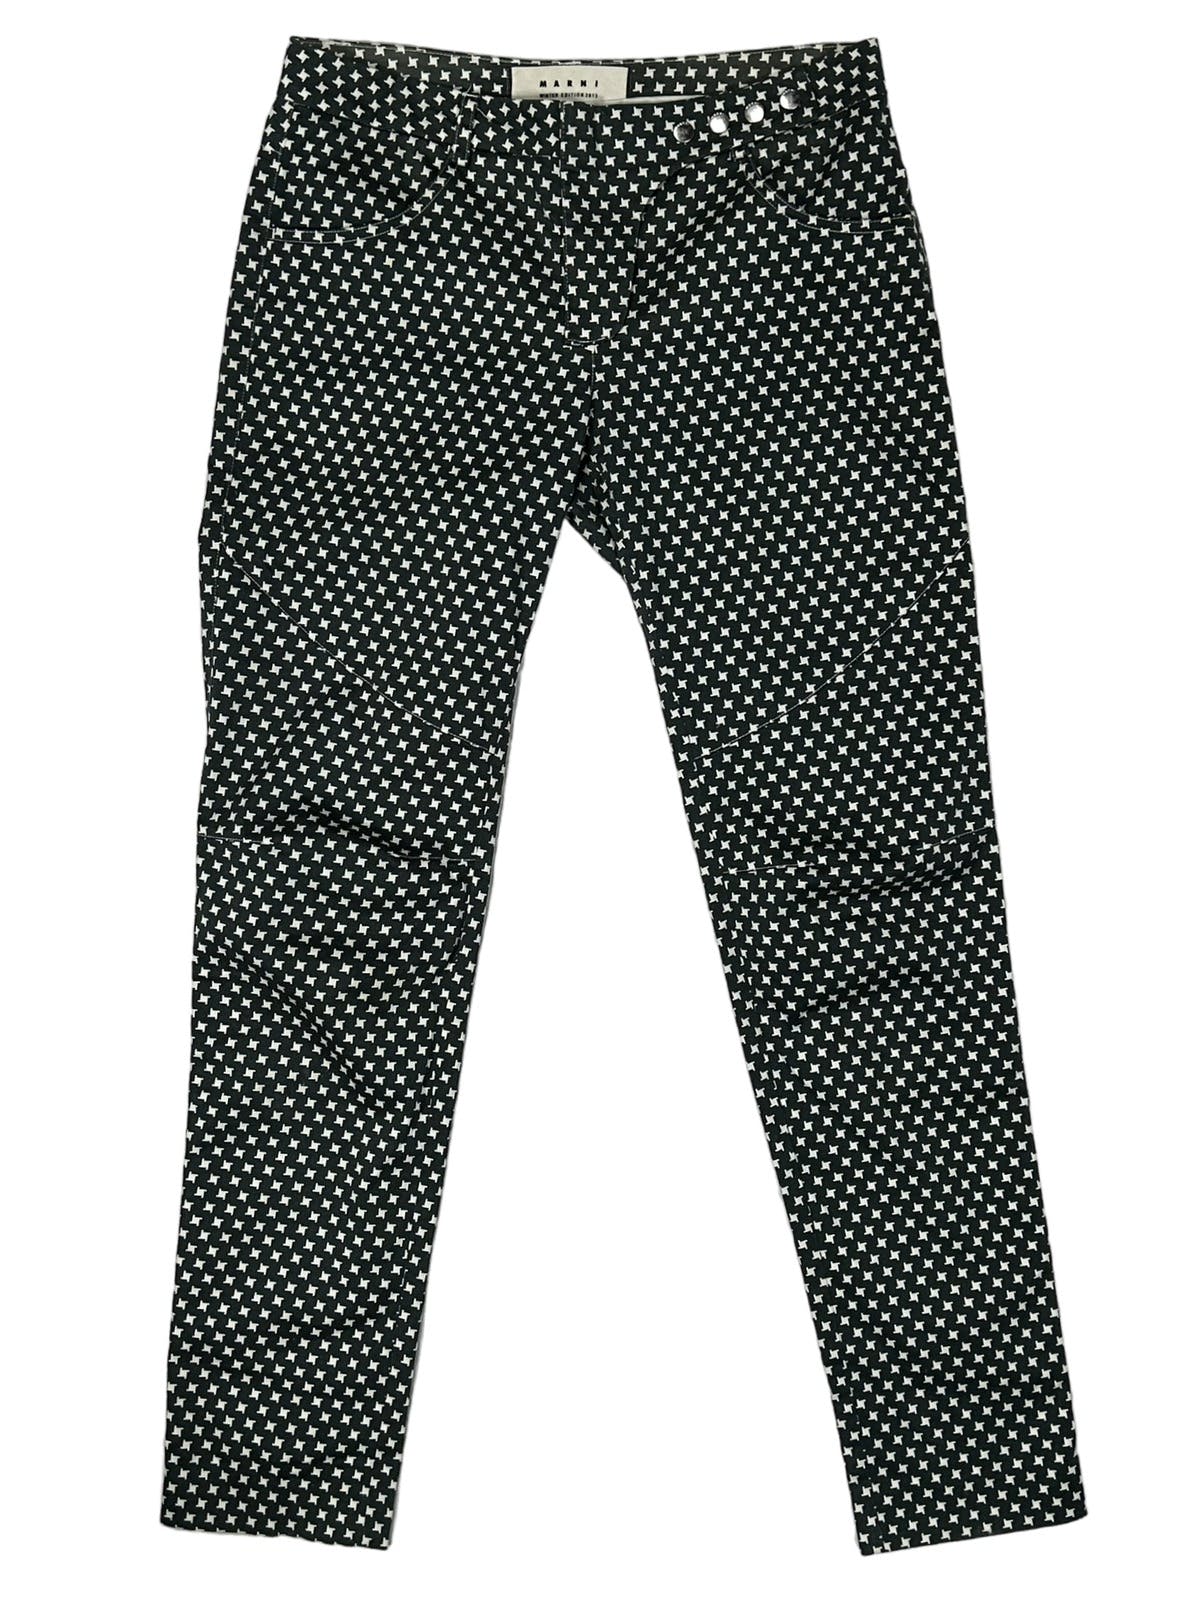 FW13 Star Pattern Pants - 1